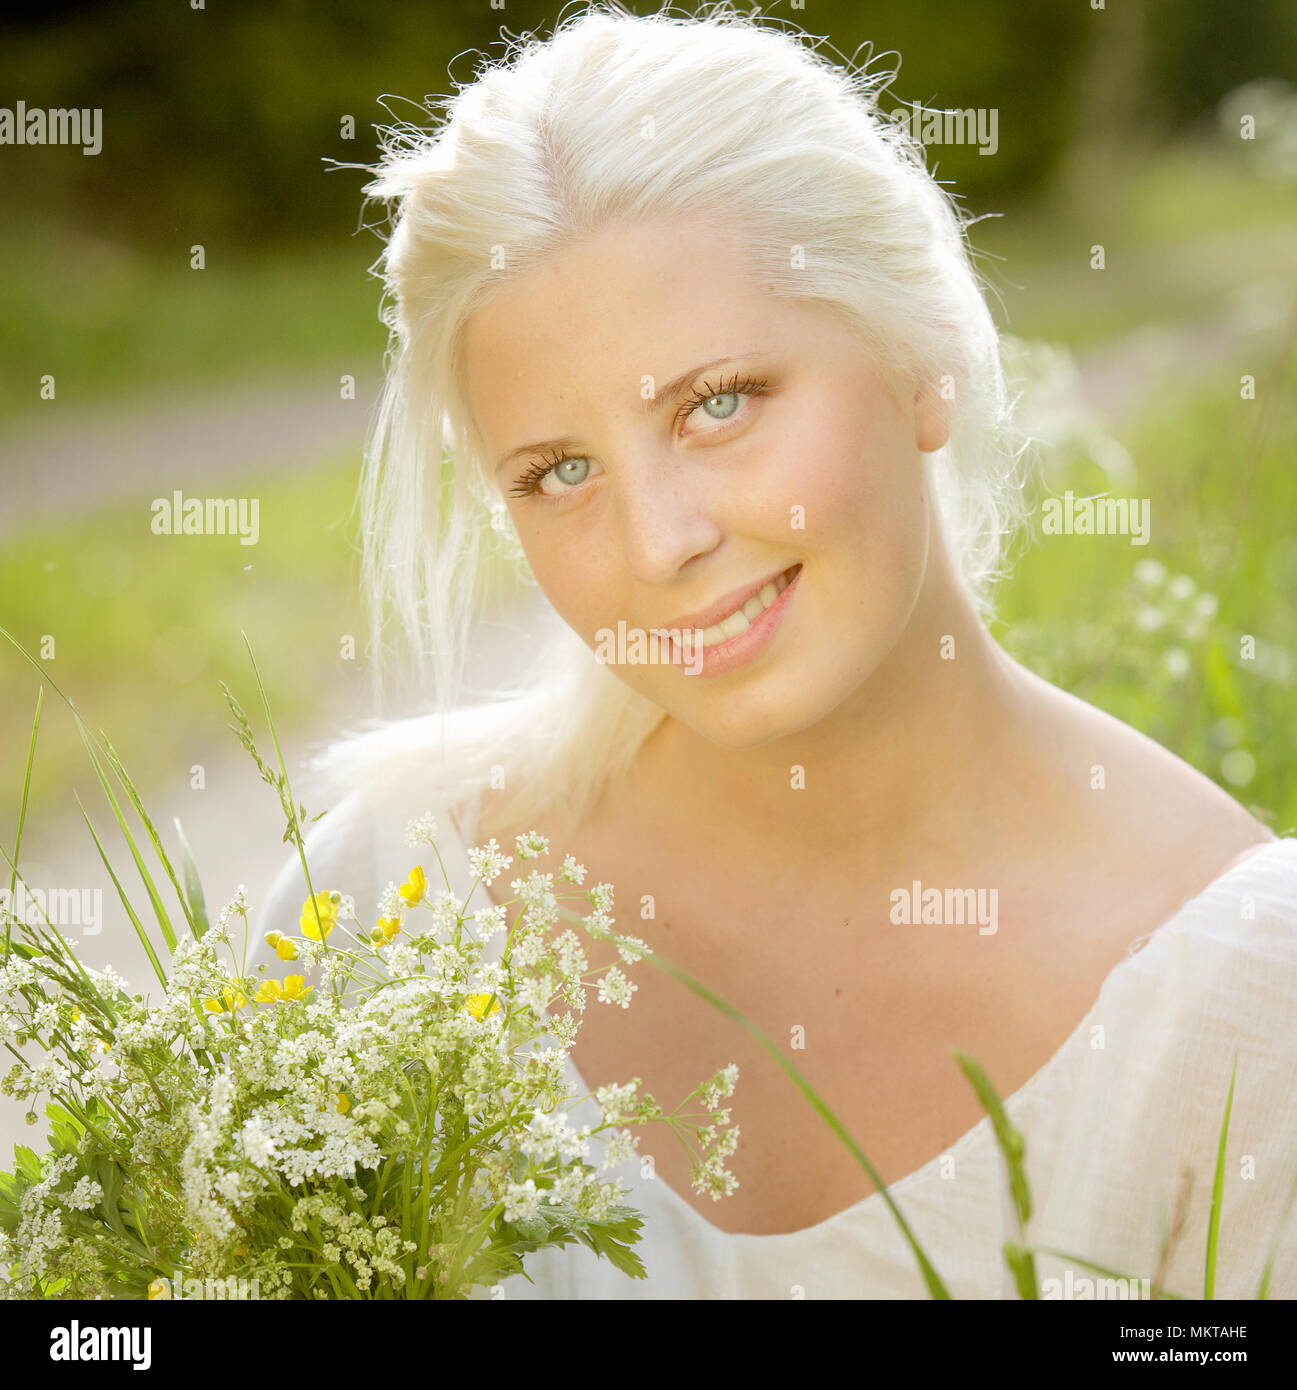 Eine schwedische Tradition ist, dass der Sommernachtstraum pick sieben verschiedene Blumen unter das Kopfkissen gelegt werden, so dass die Träume über den zukünftigen brideg Stockfoto